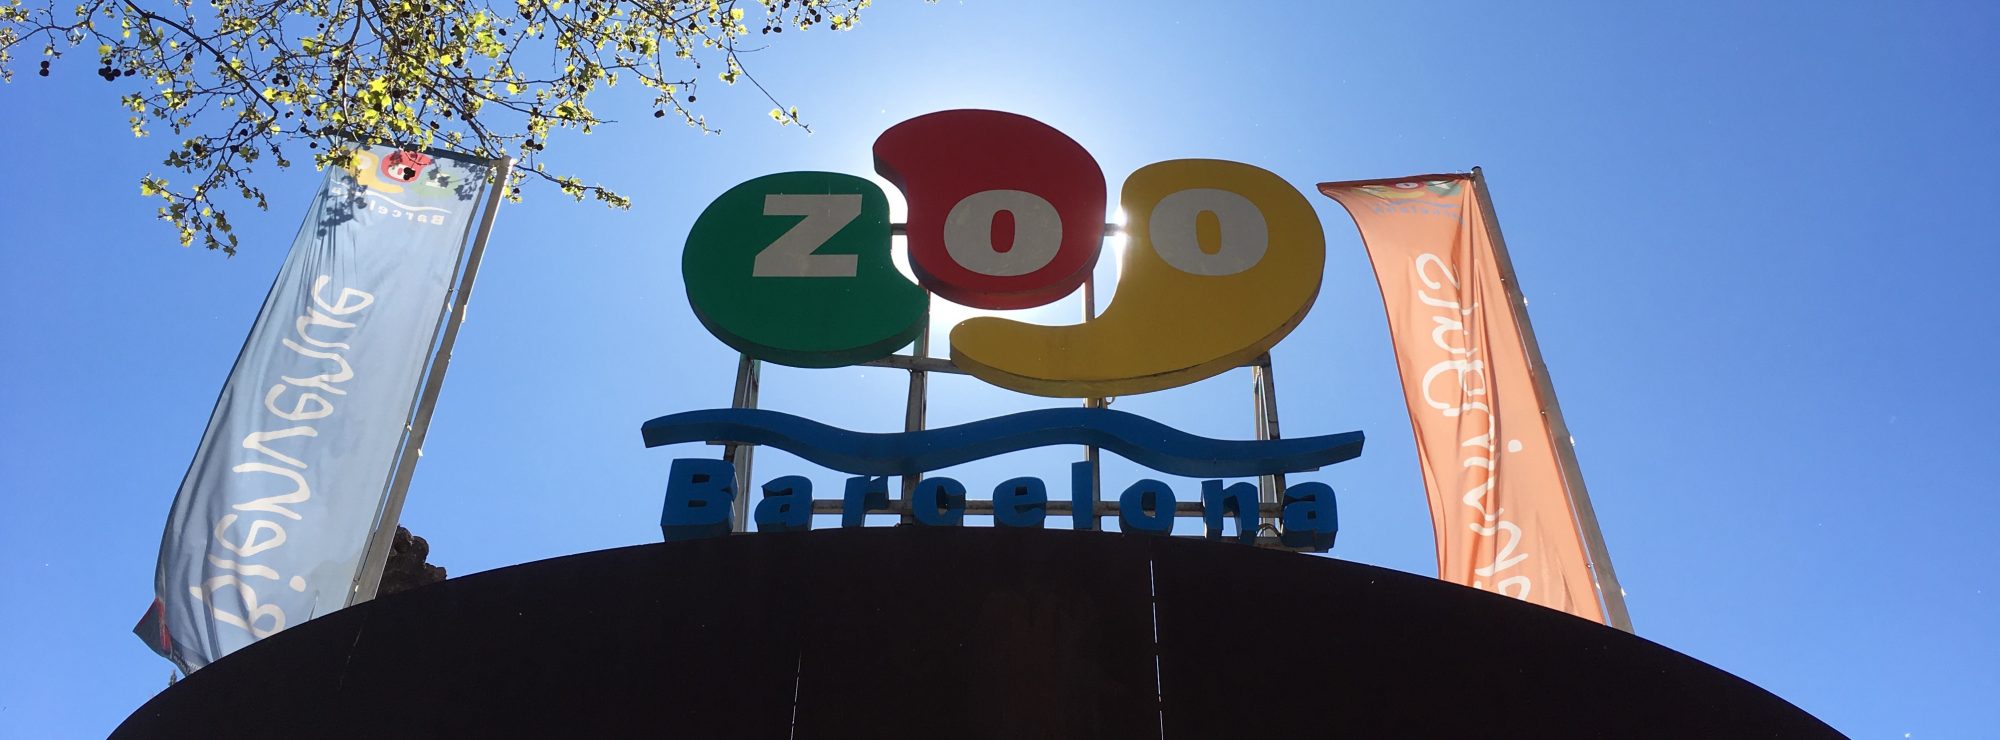 Le zoo de Barcelone en famille